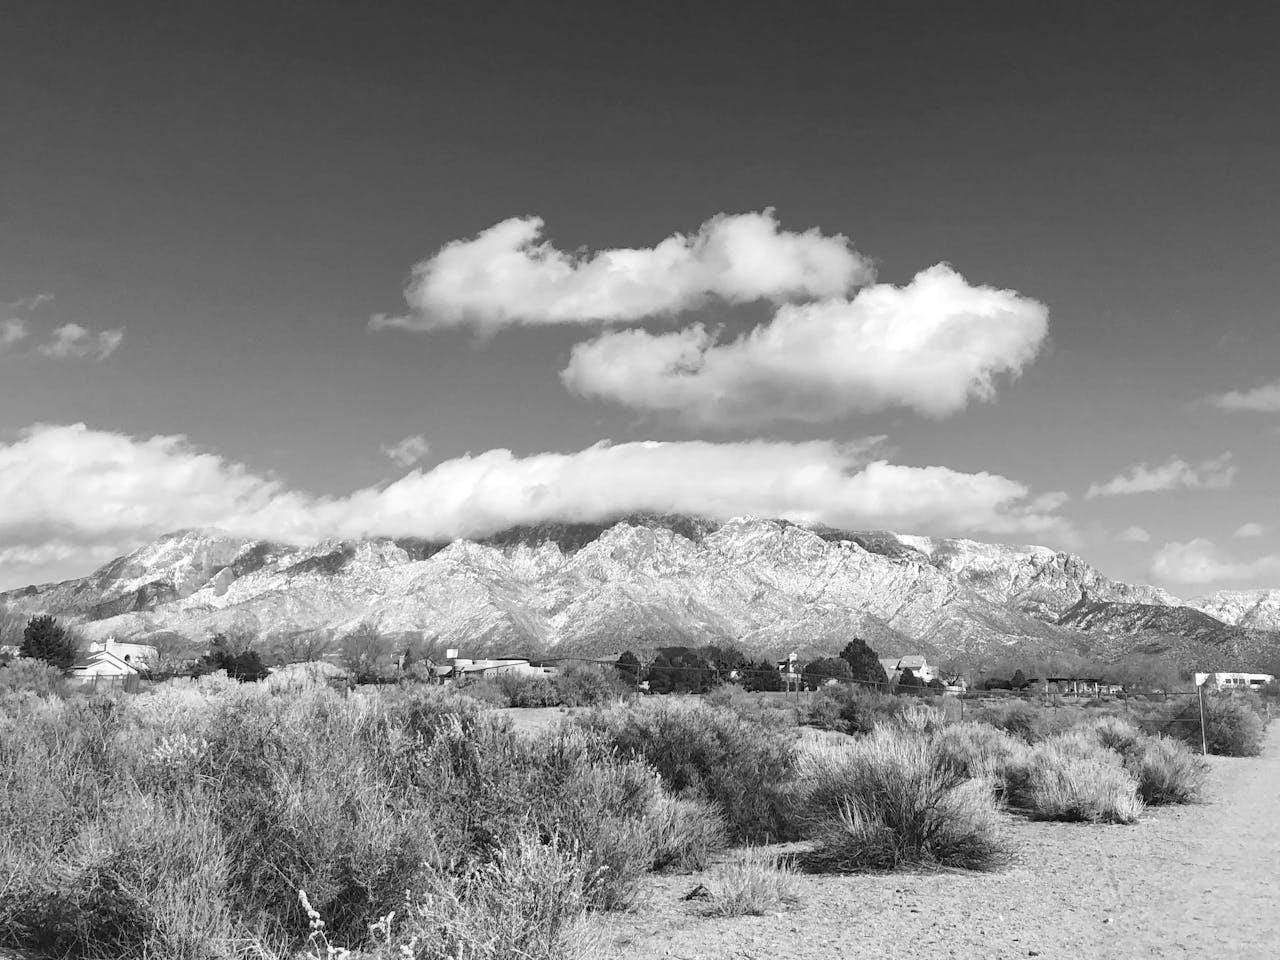 Mountain view near Albuquerque Airport